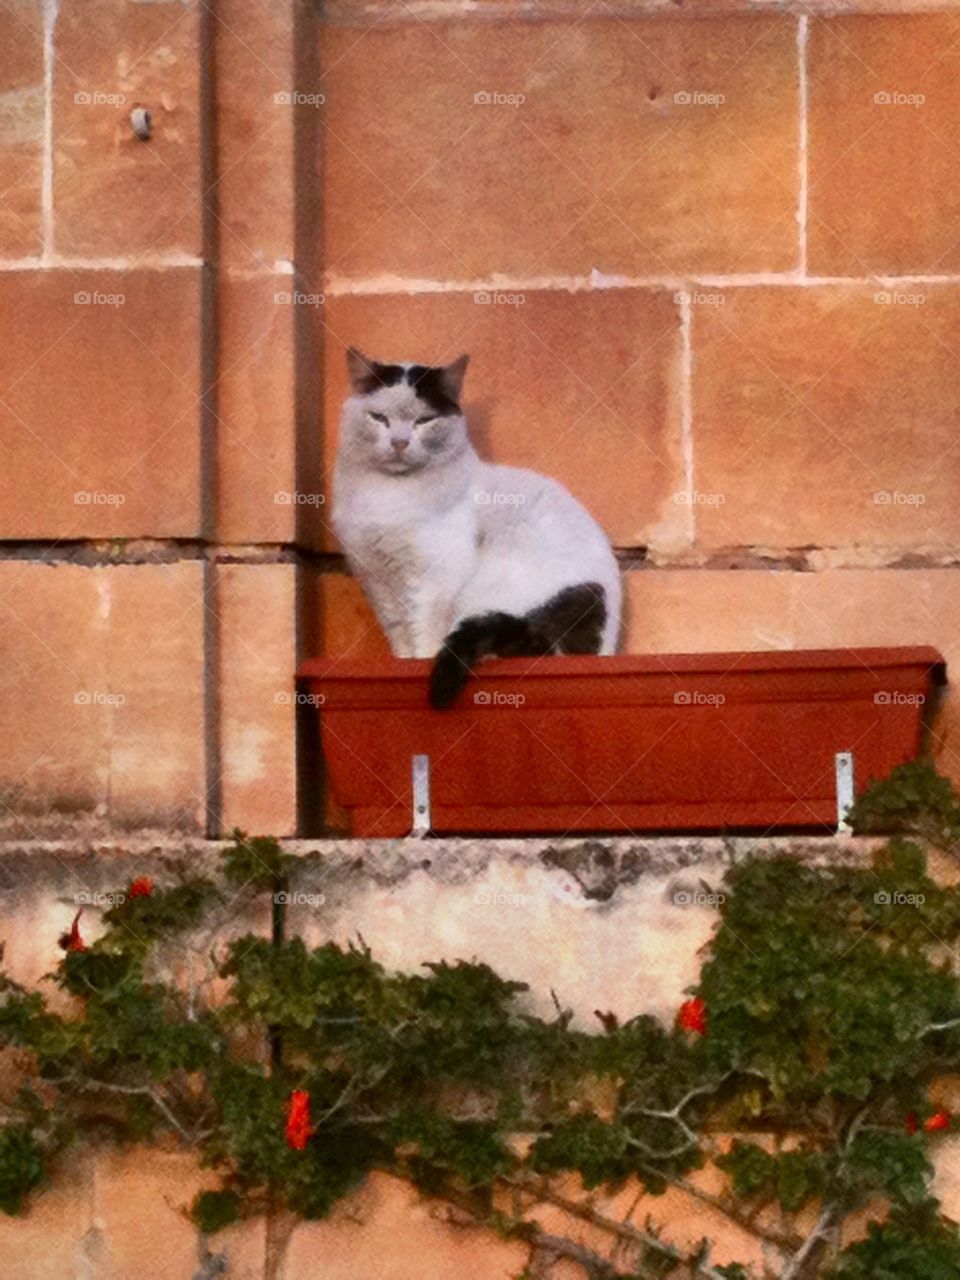 Cat in plant pot